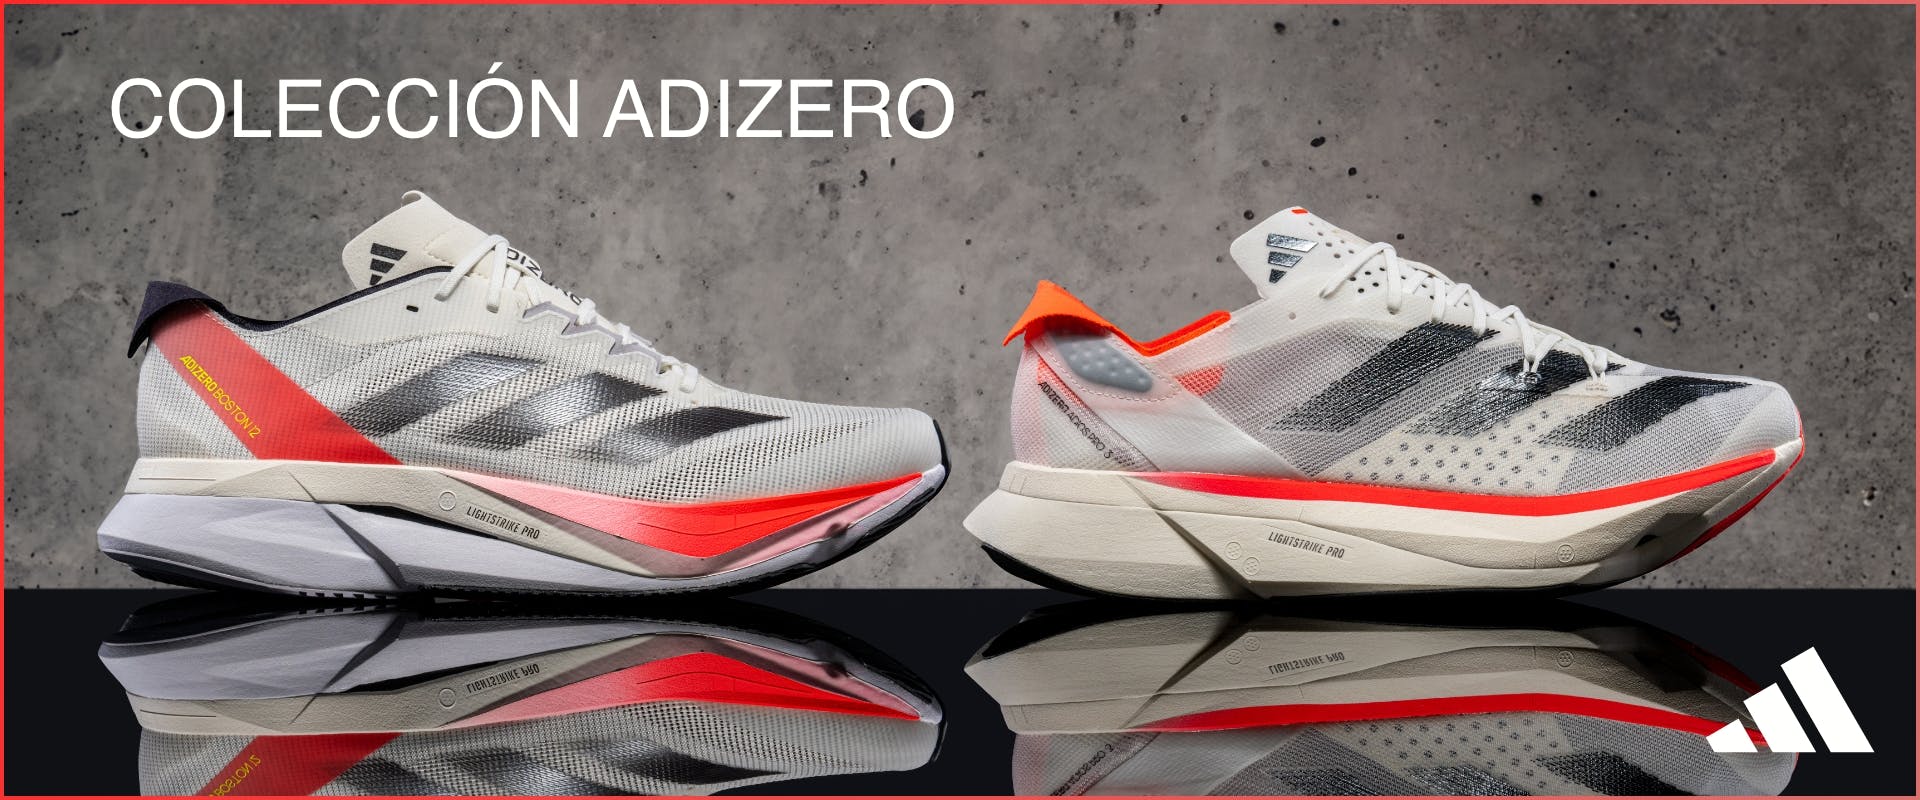 ES adidas Adizero Collection